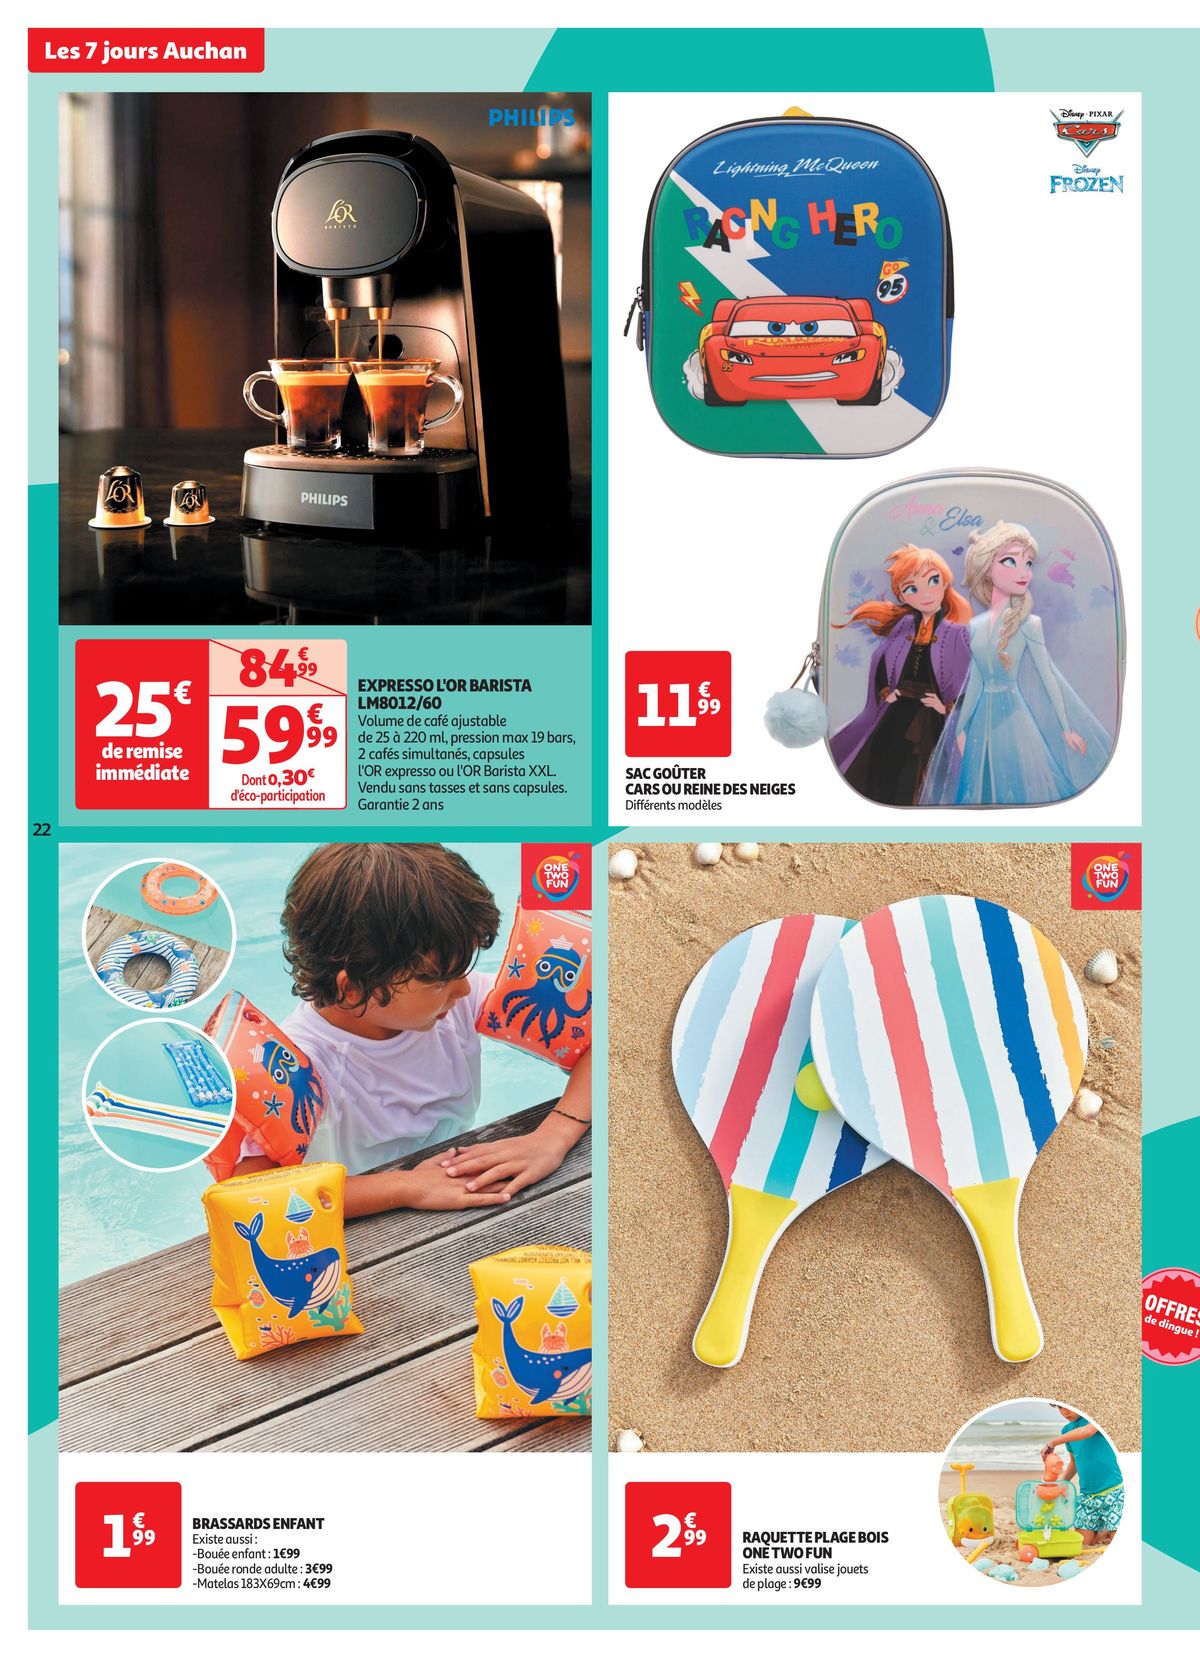 Catalogue C'est les 7 jours Auchan dans votre super !, page 00022